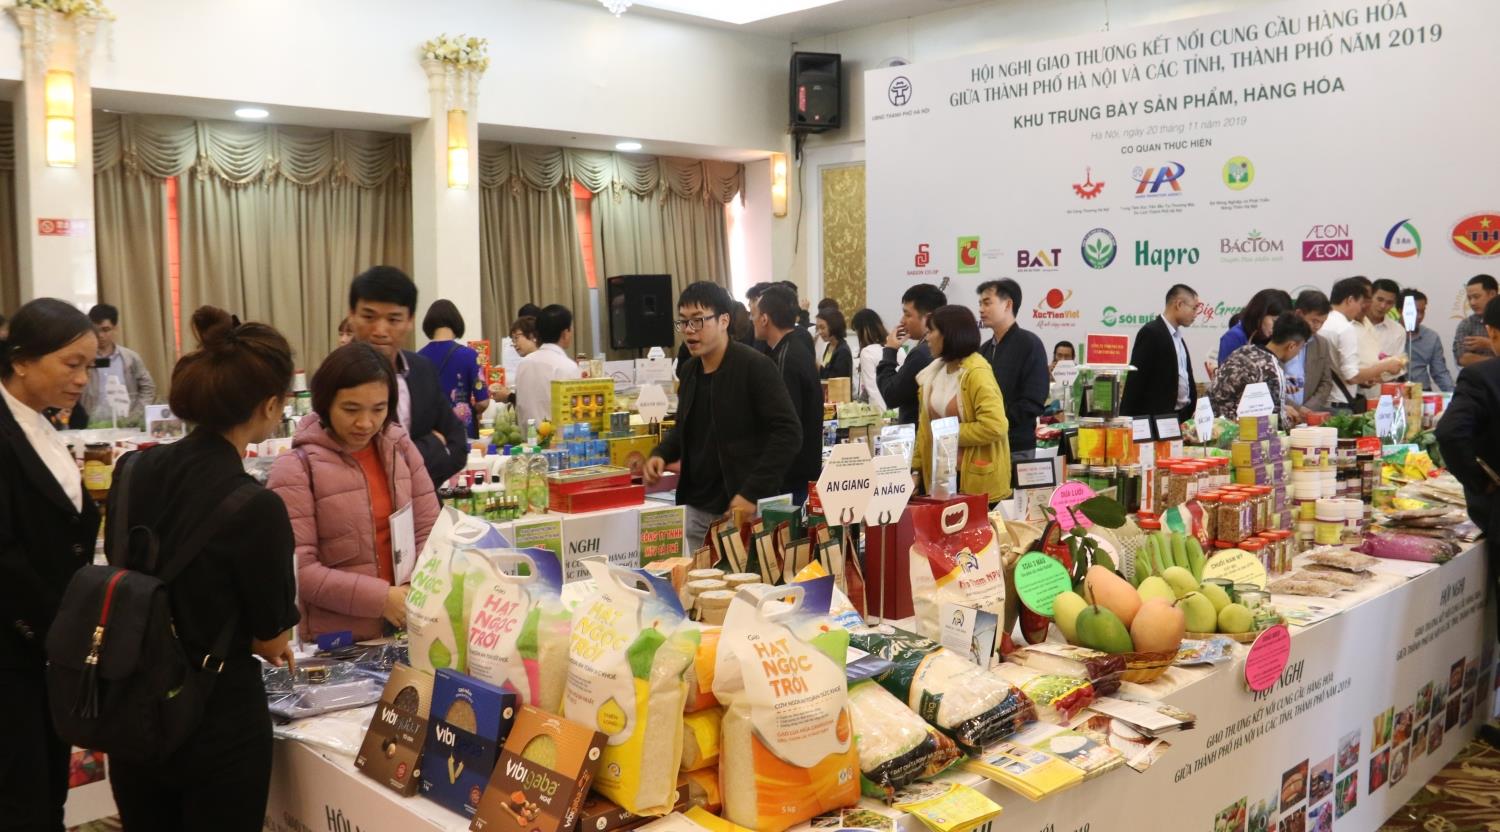 Thư mời tham gia Hội nghị kết nối cung-cầu hàng hóa giữa thành phố Hà Nội và các tỉnh, thành phố năm 2020